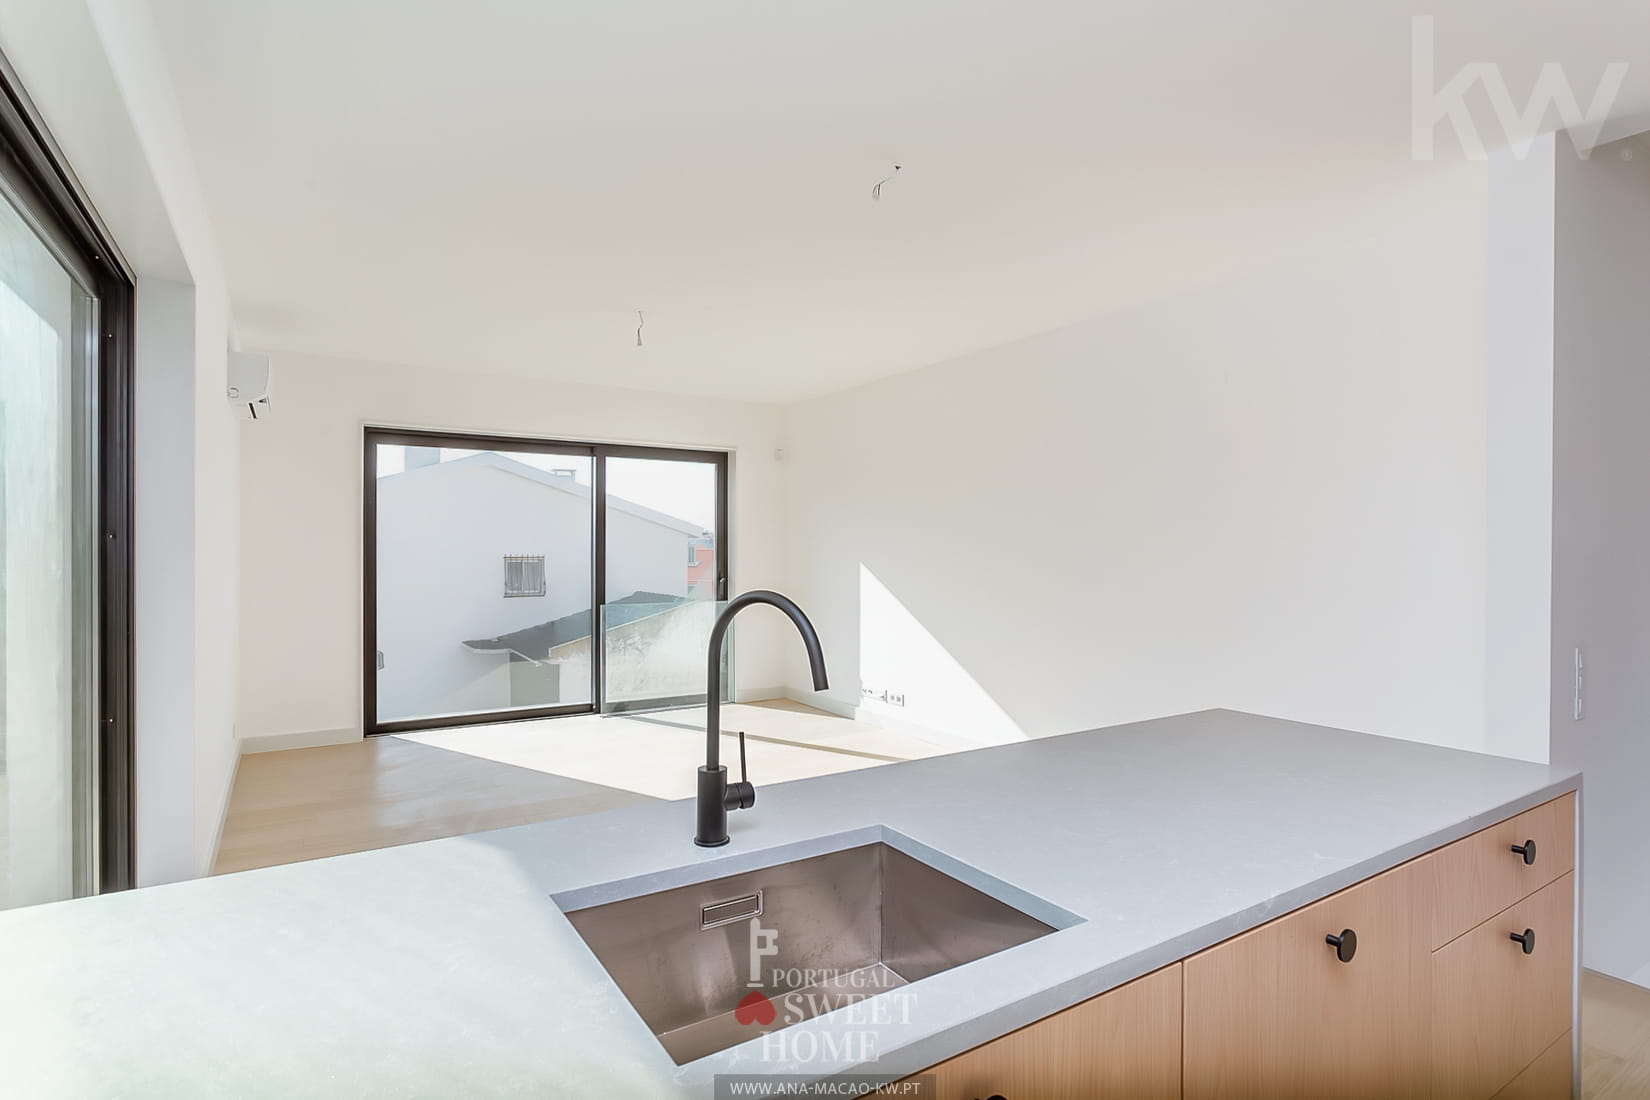 Vue du grand séjour avec cuisine intégrée (31 m²)